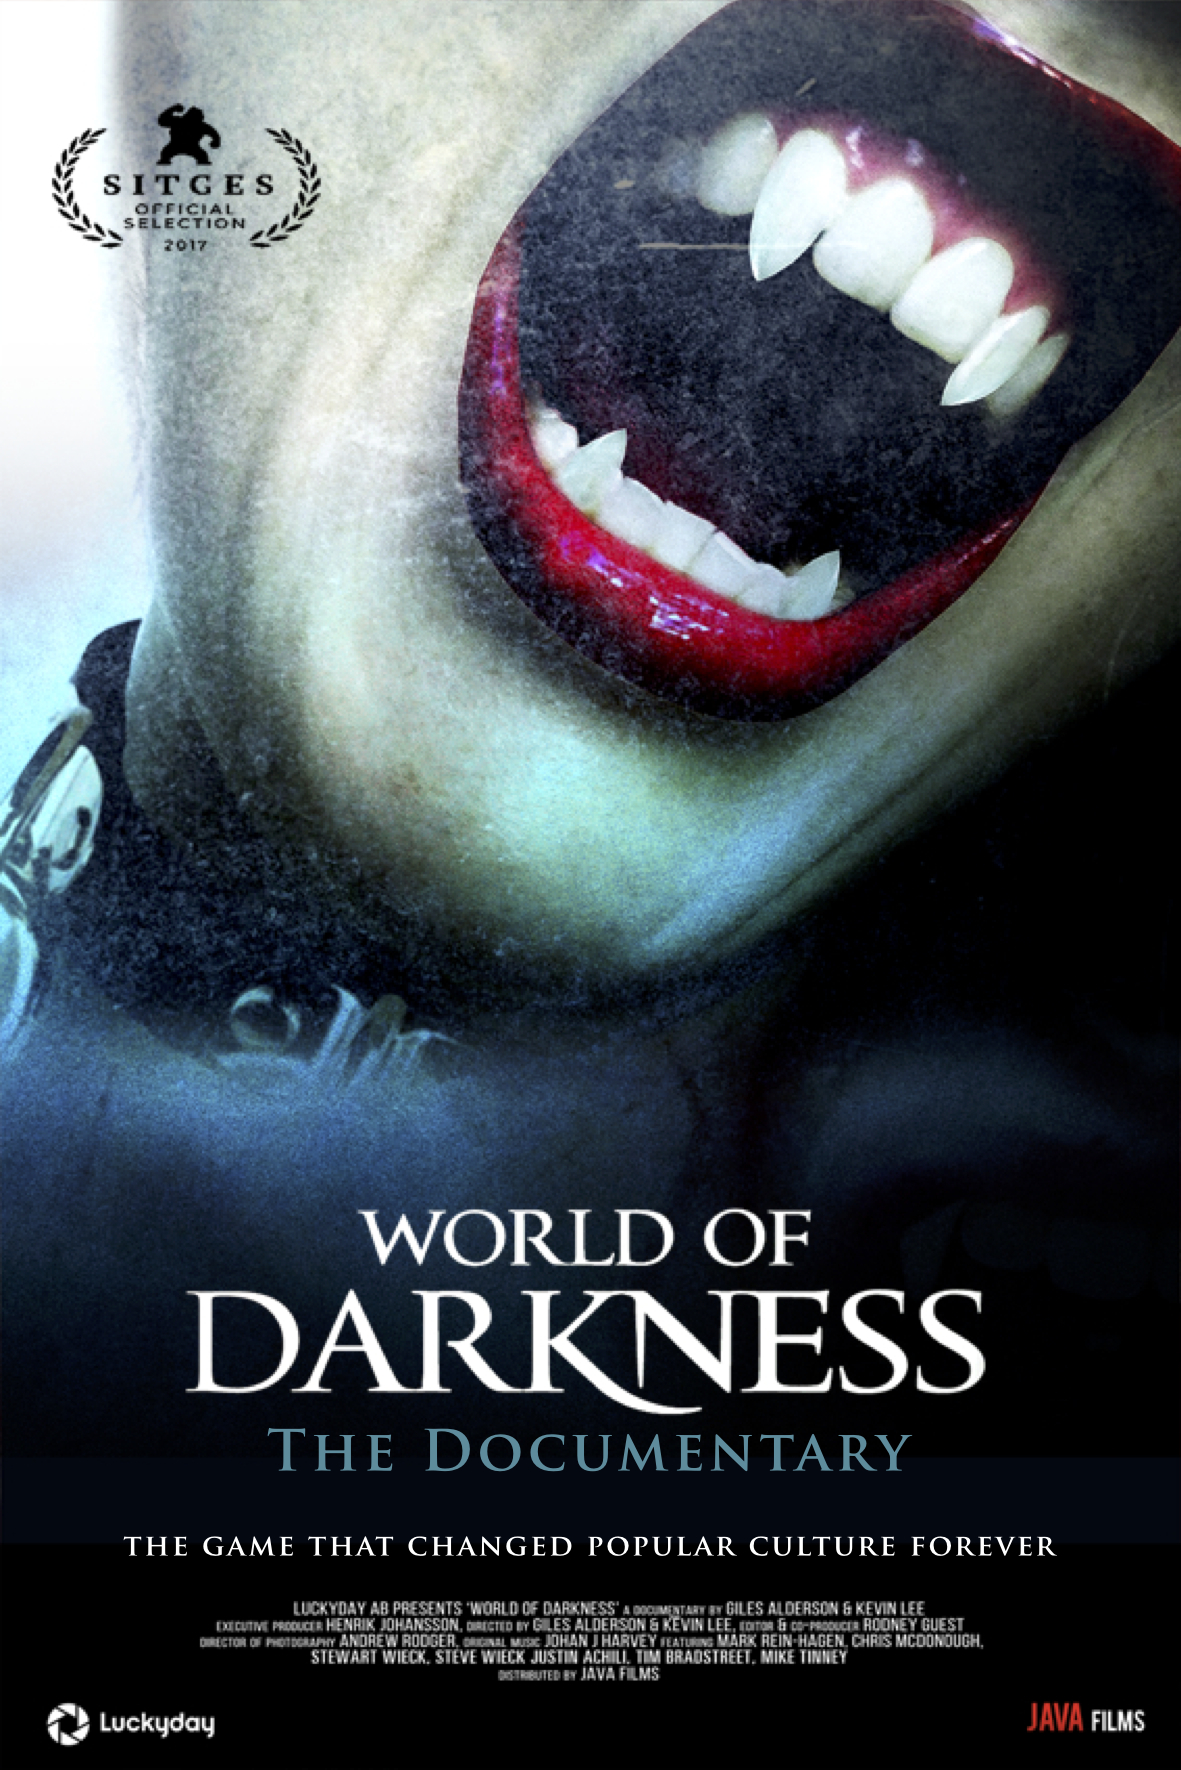 Nonton film World of Darkness layarkaca21 indoxx1 ganool online streaming terbaru